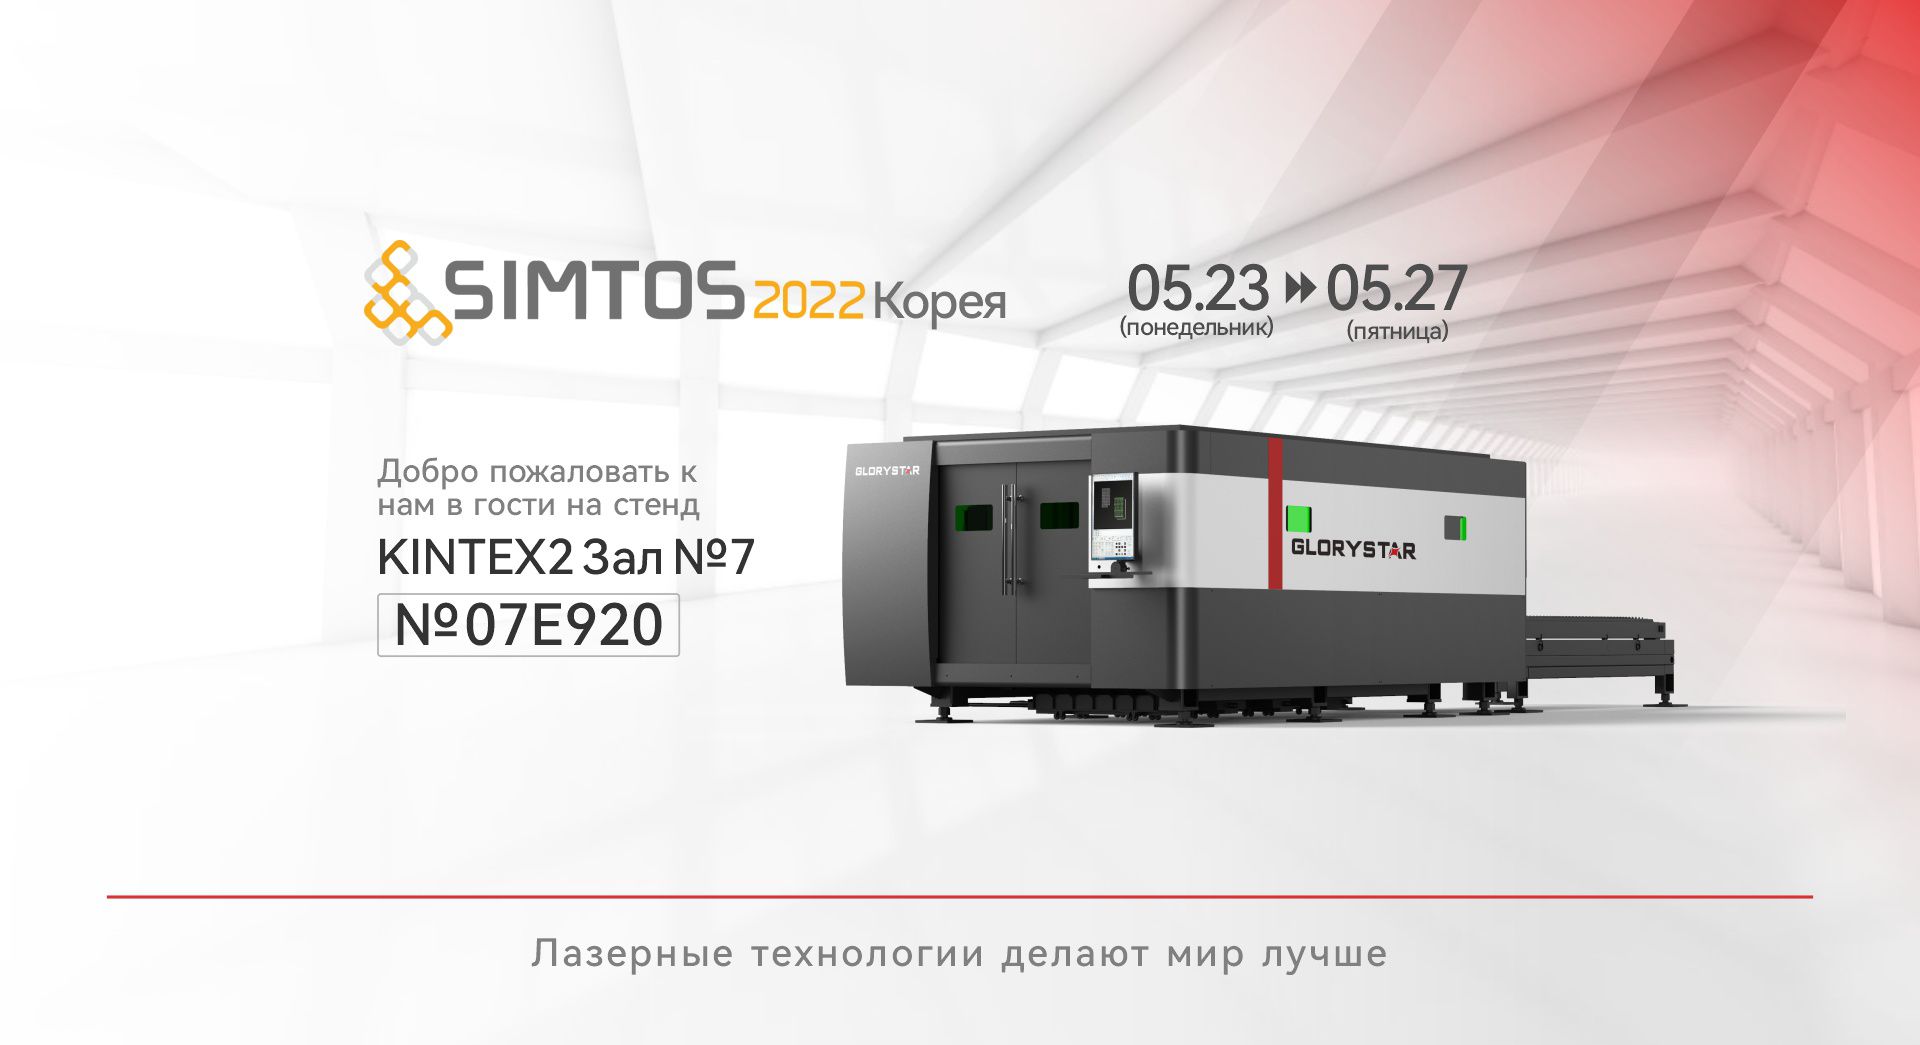 Glorystar Laser, производитель станков для лазерной резки металла, примет участие в выставке SIMTOS 2022.